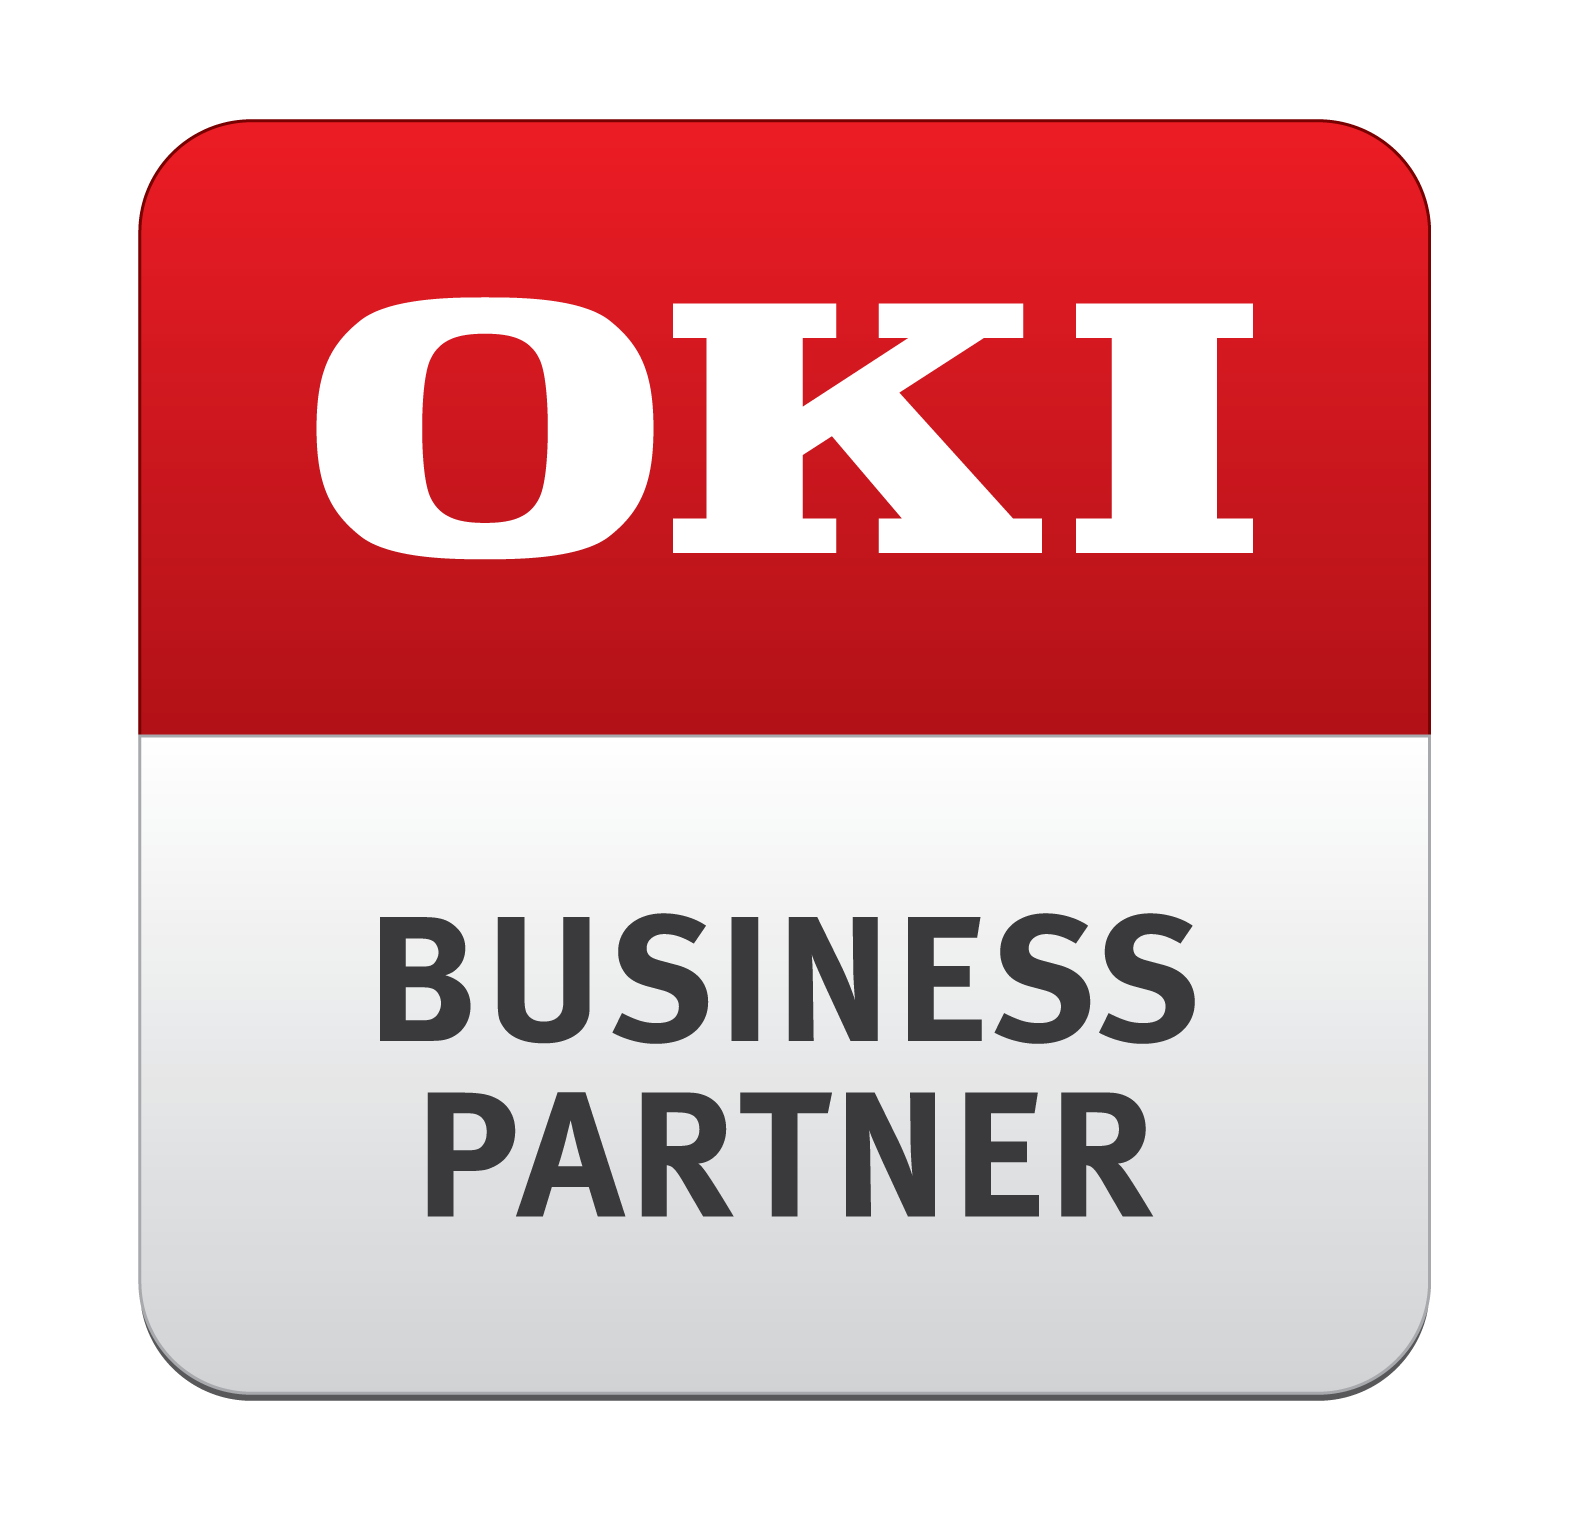 OKI Business Partner